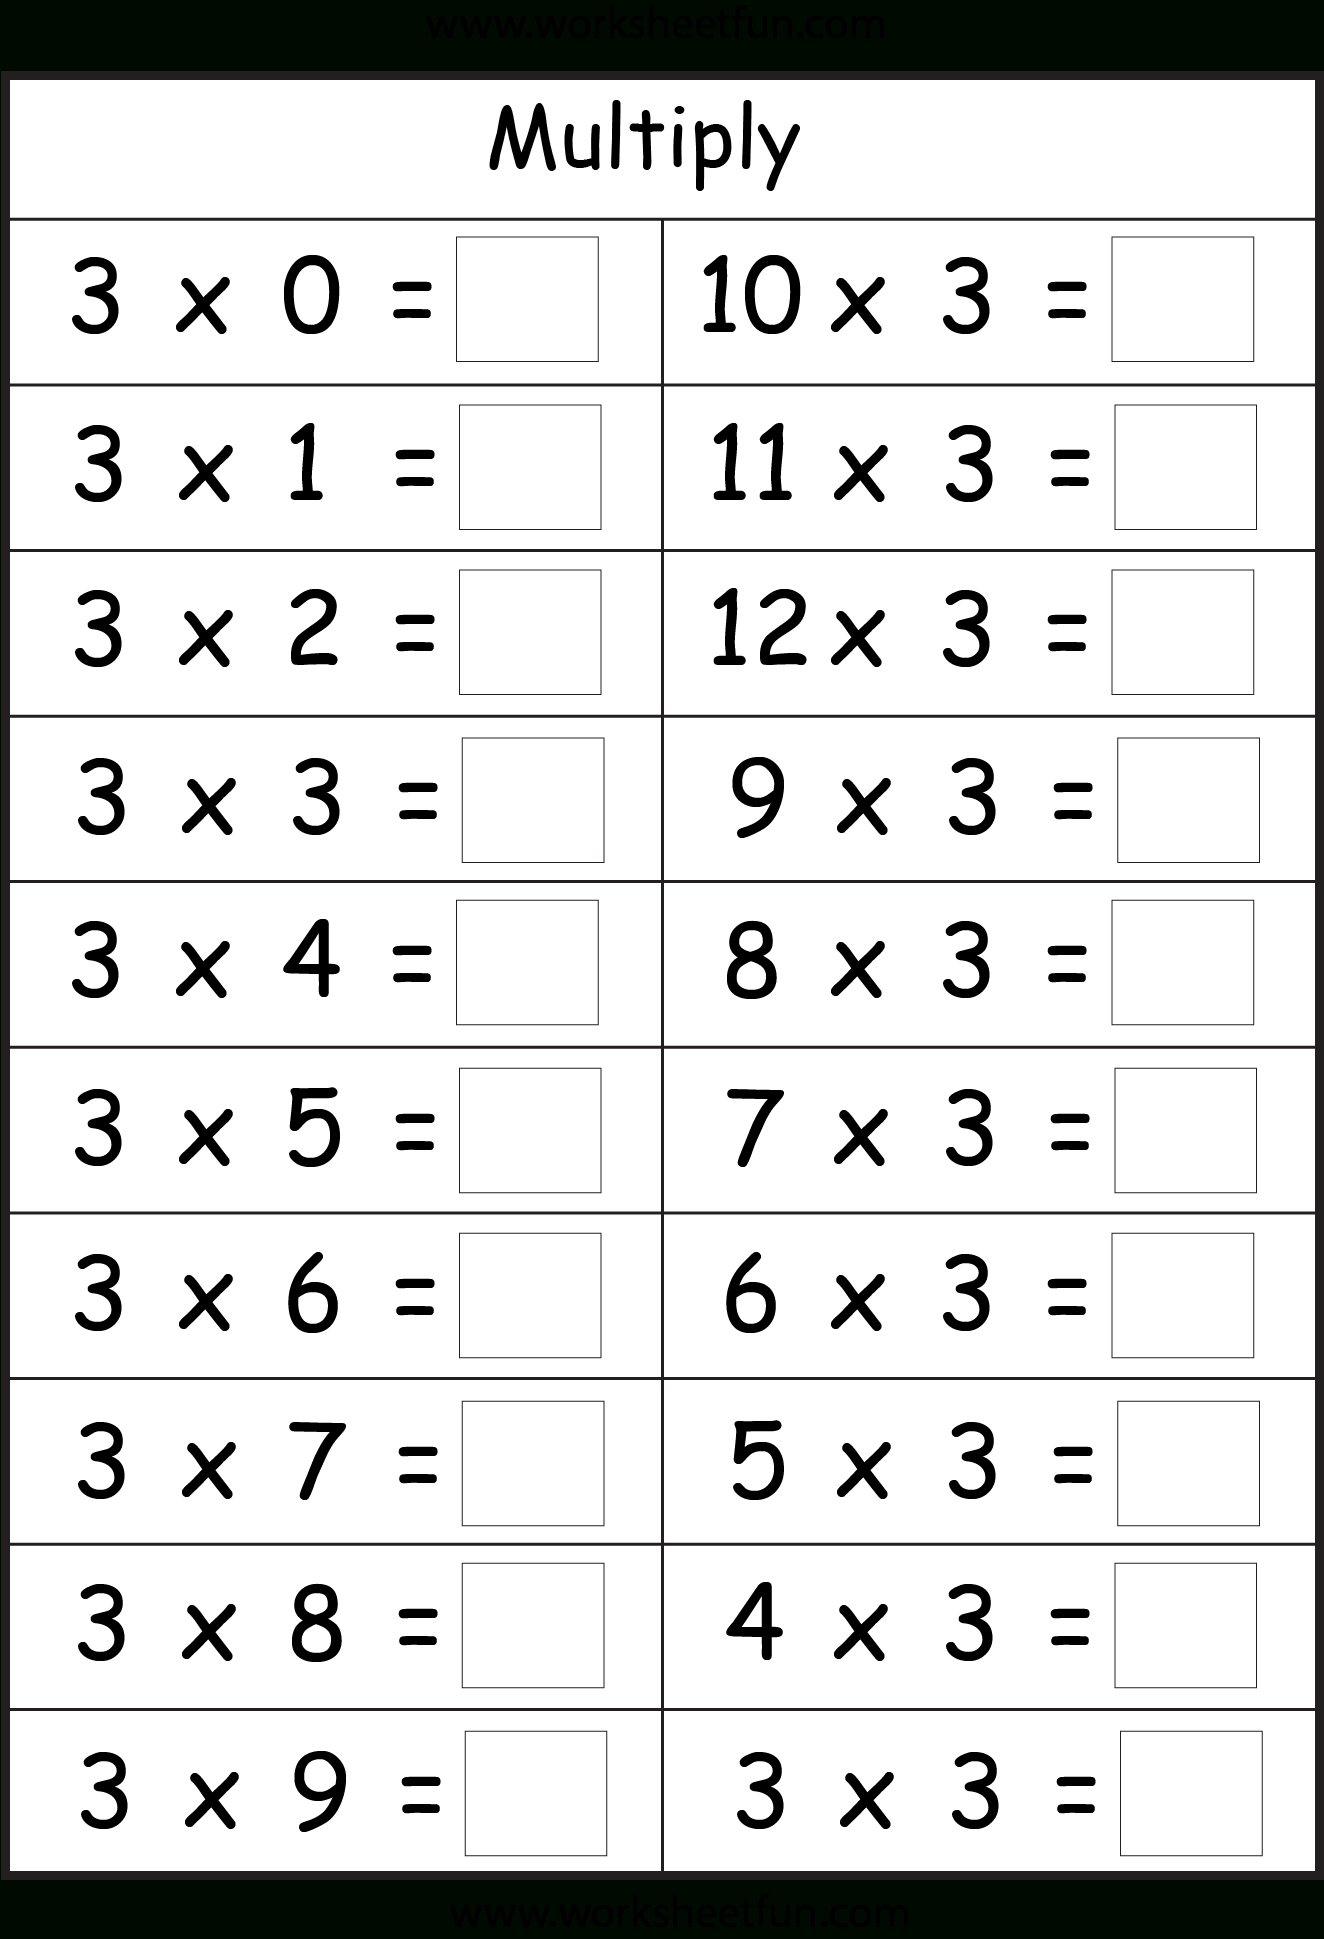 Superkids Math Worksheet | Printable Worksheets And inside Multiplication Worksheets 3's And 4's